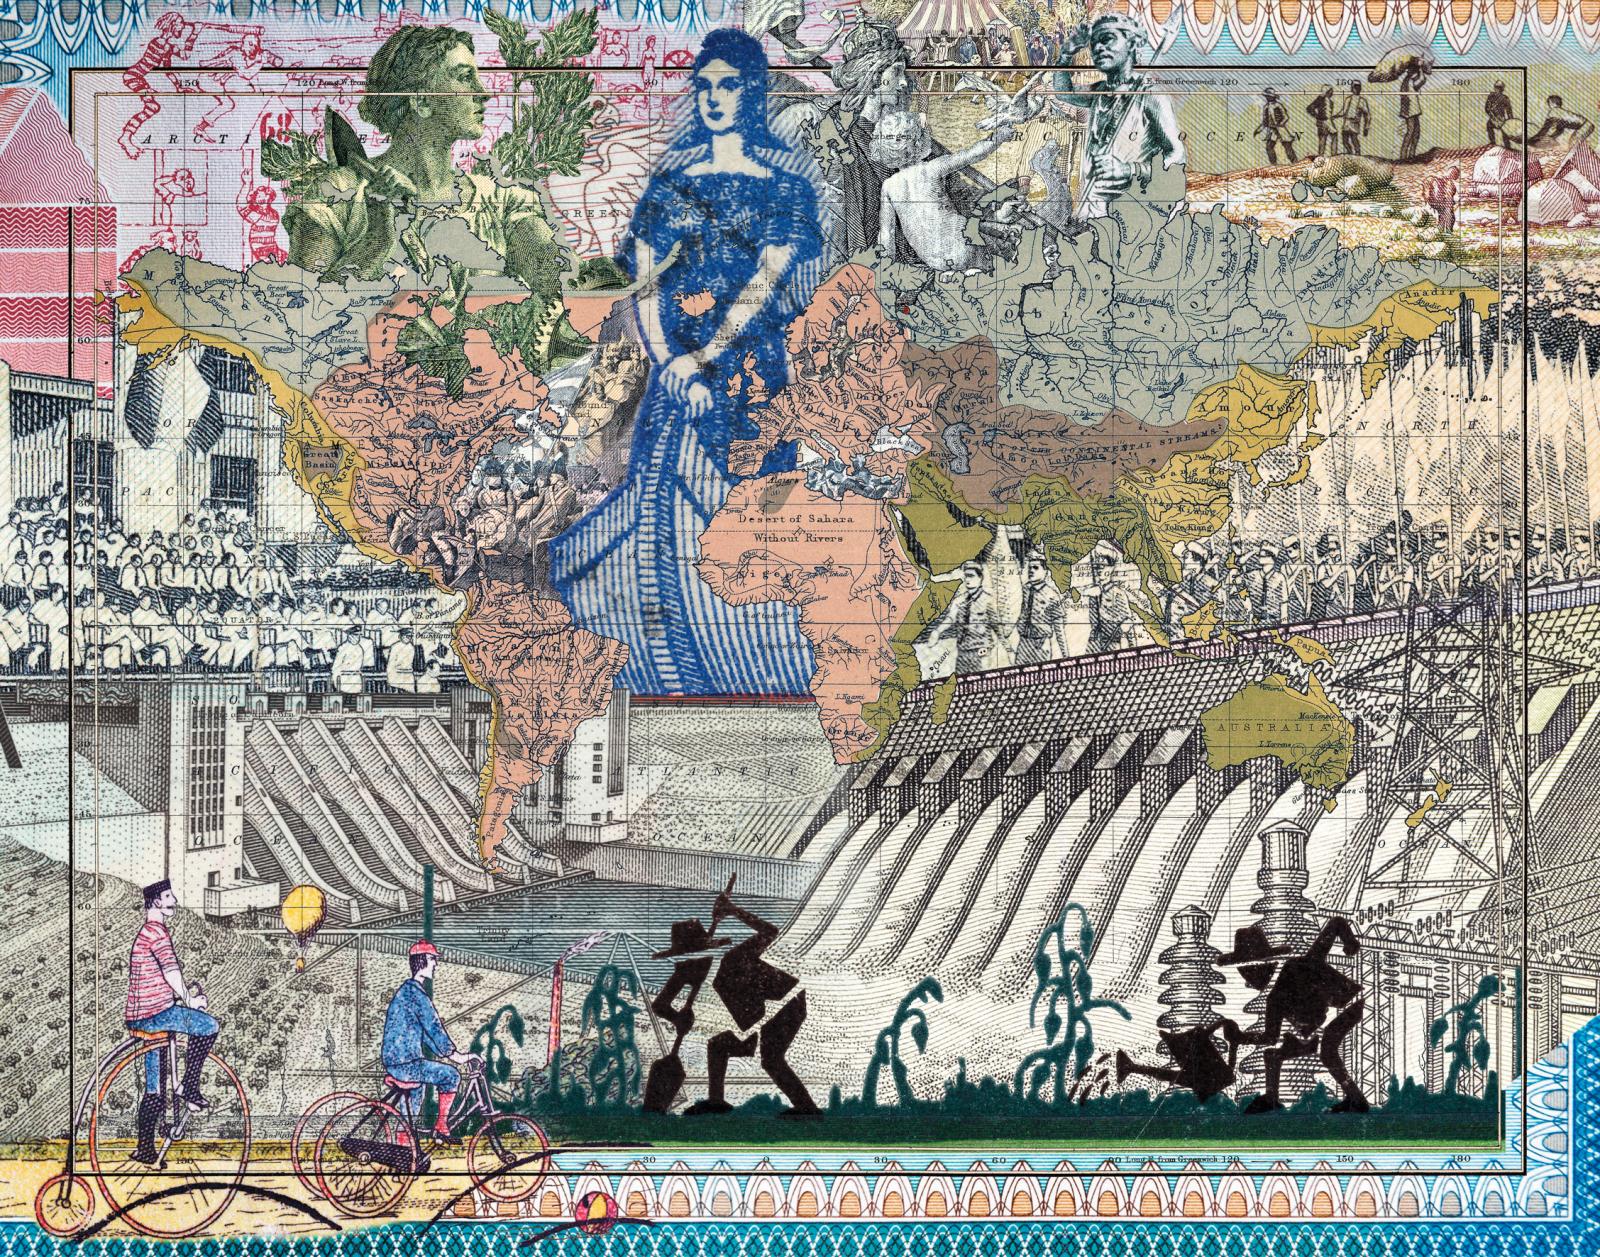 Malala Andrialavidrazana (b. 1971), Figures 1852, River Systems of the World, 2018, pigment print, 110 x 158 cm.© Malala Andrialavidrazana